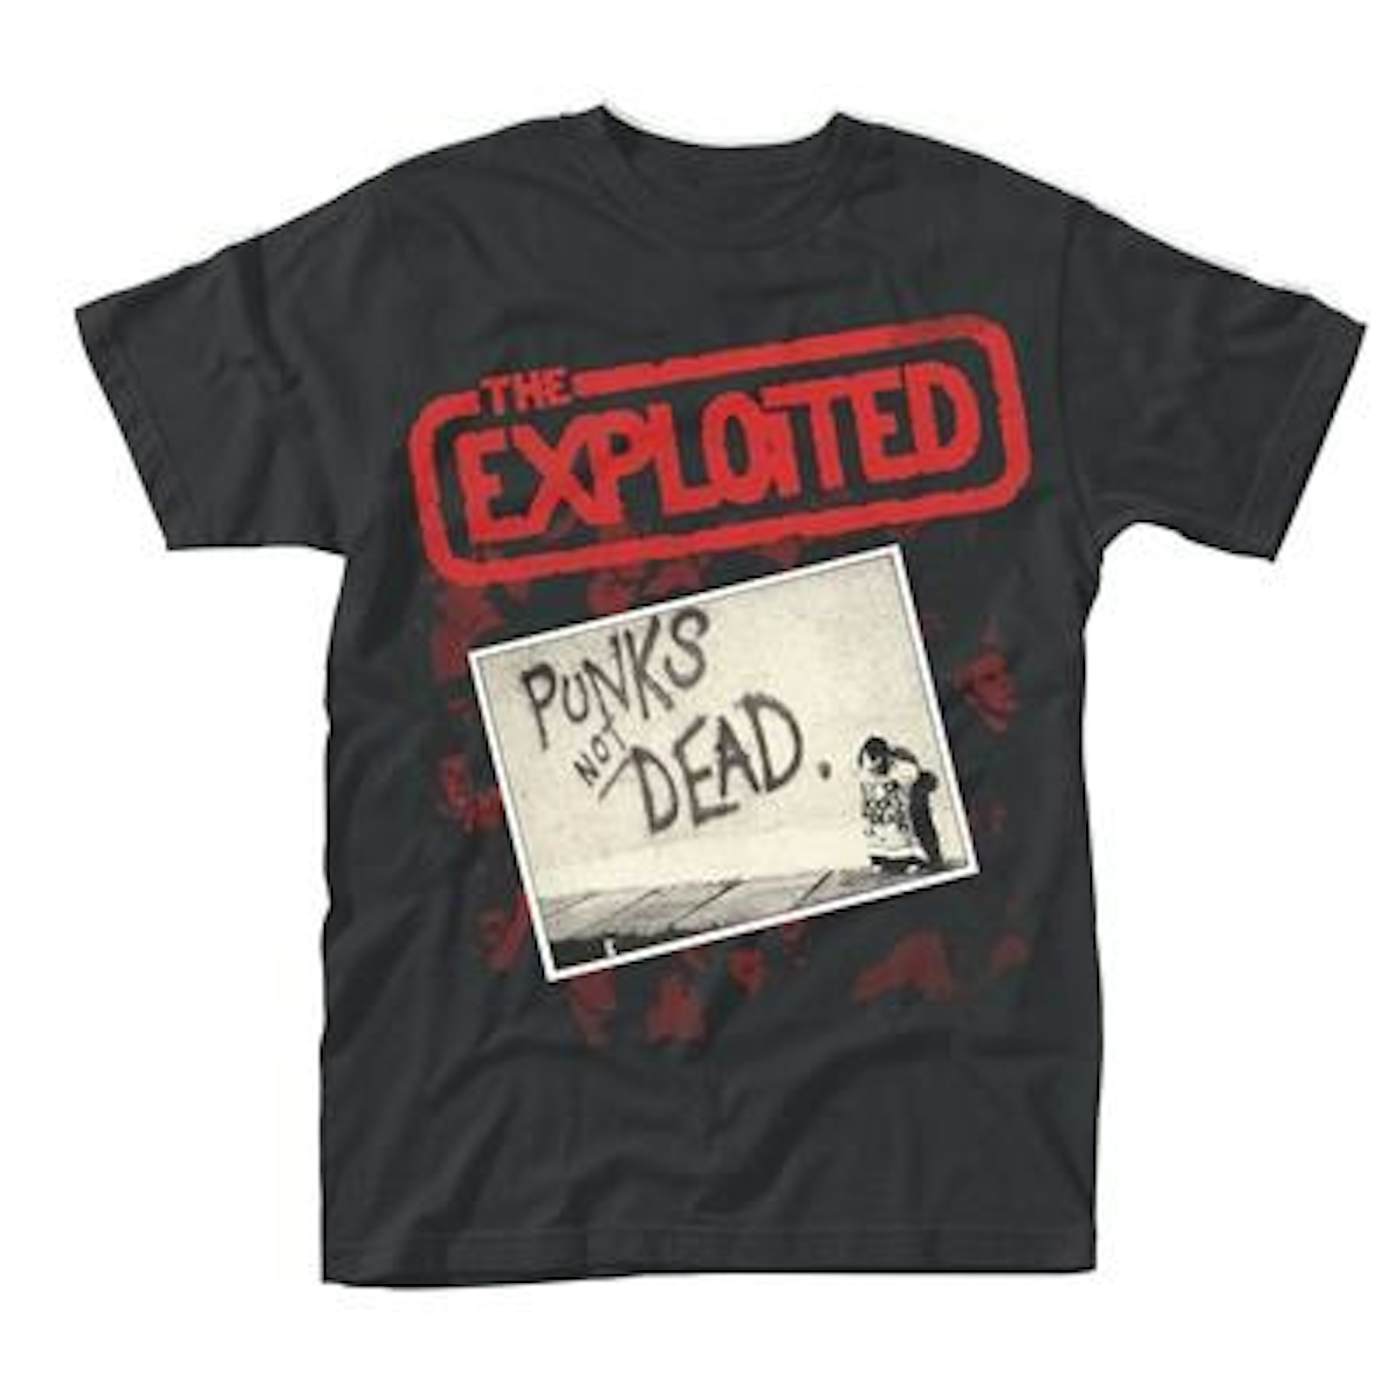 The Exploited T Shirt - Punks Not Dead (Album)